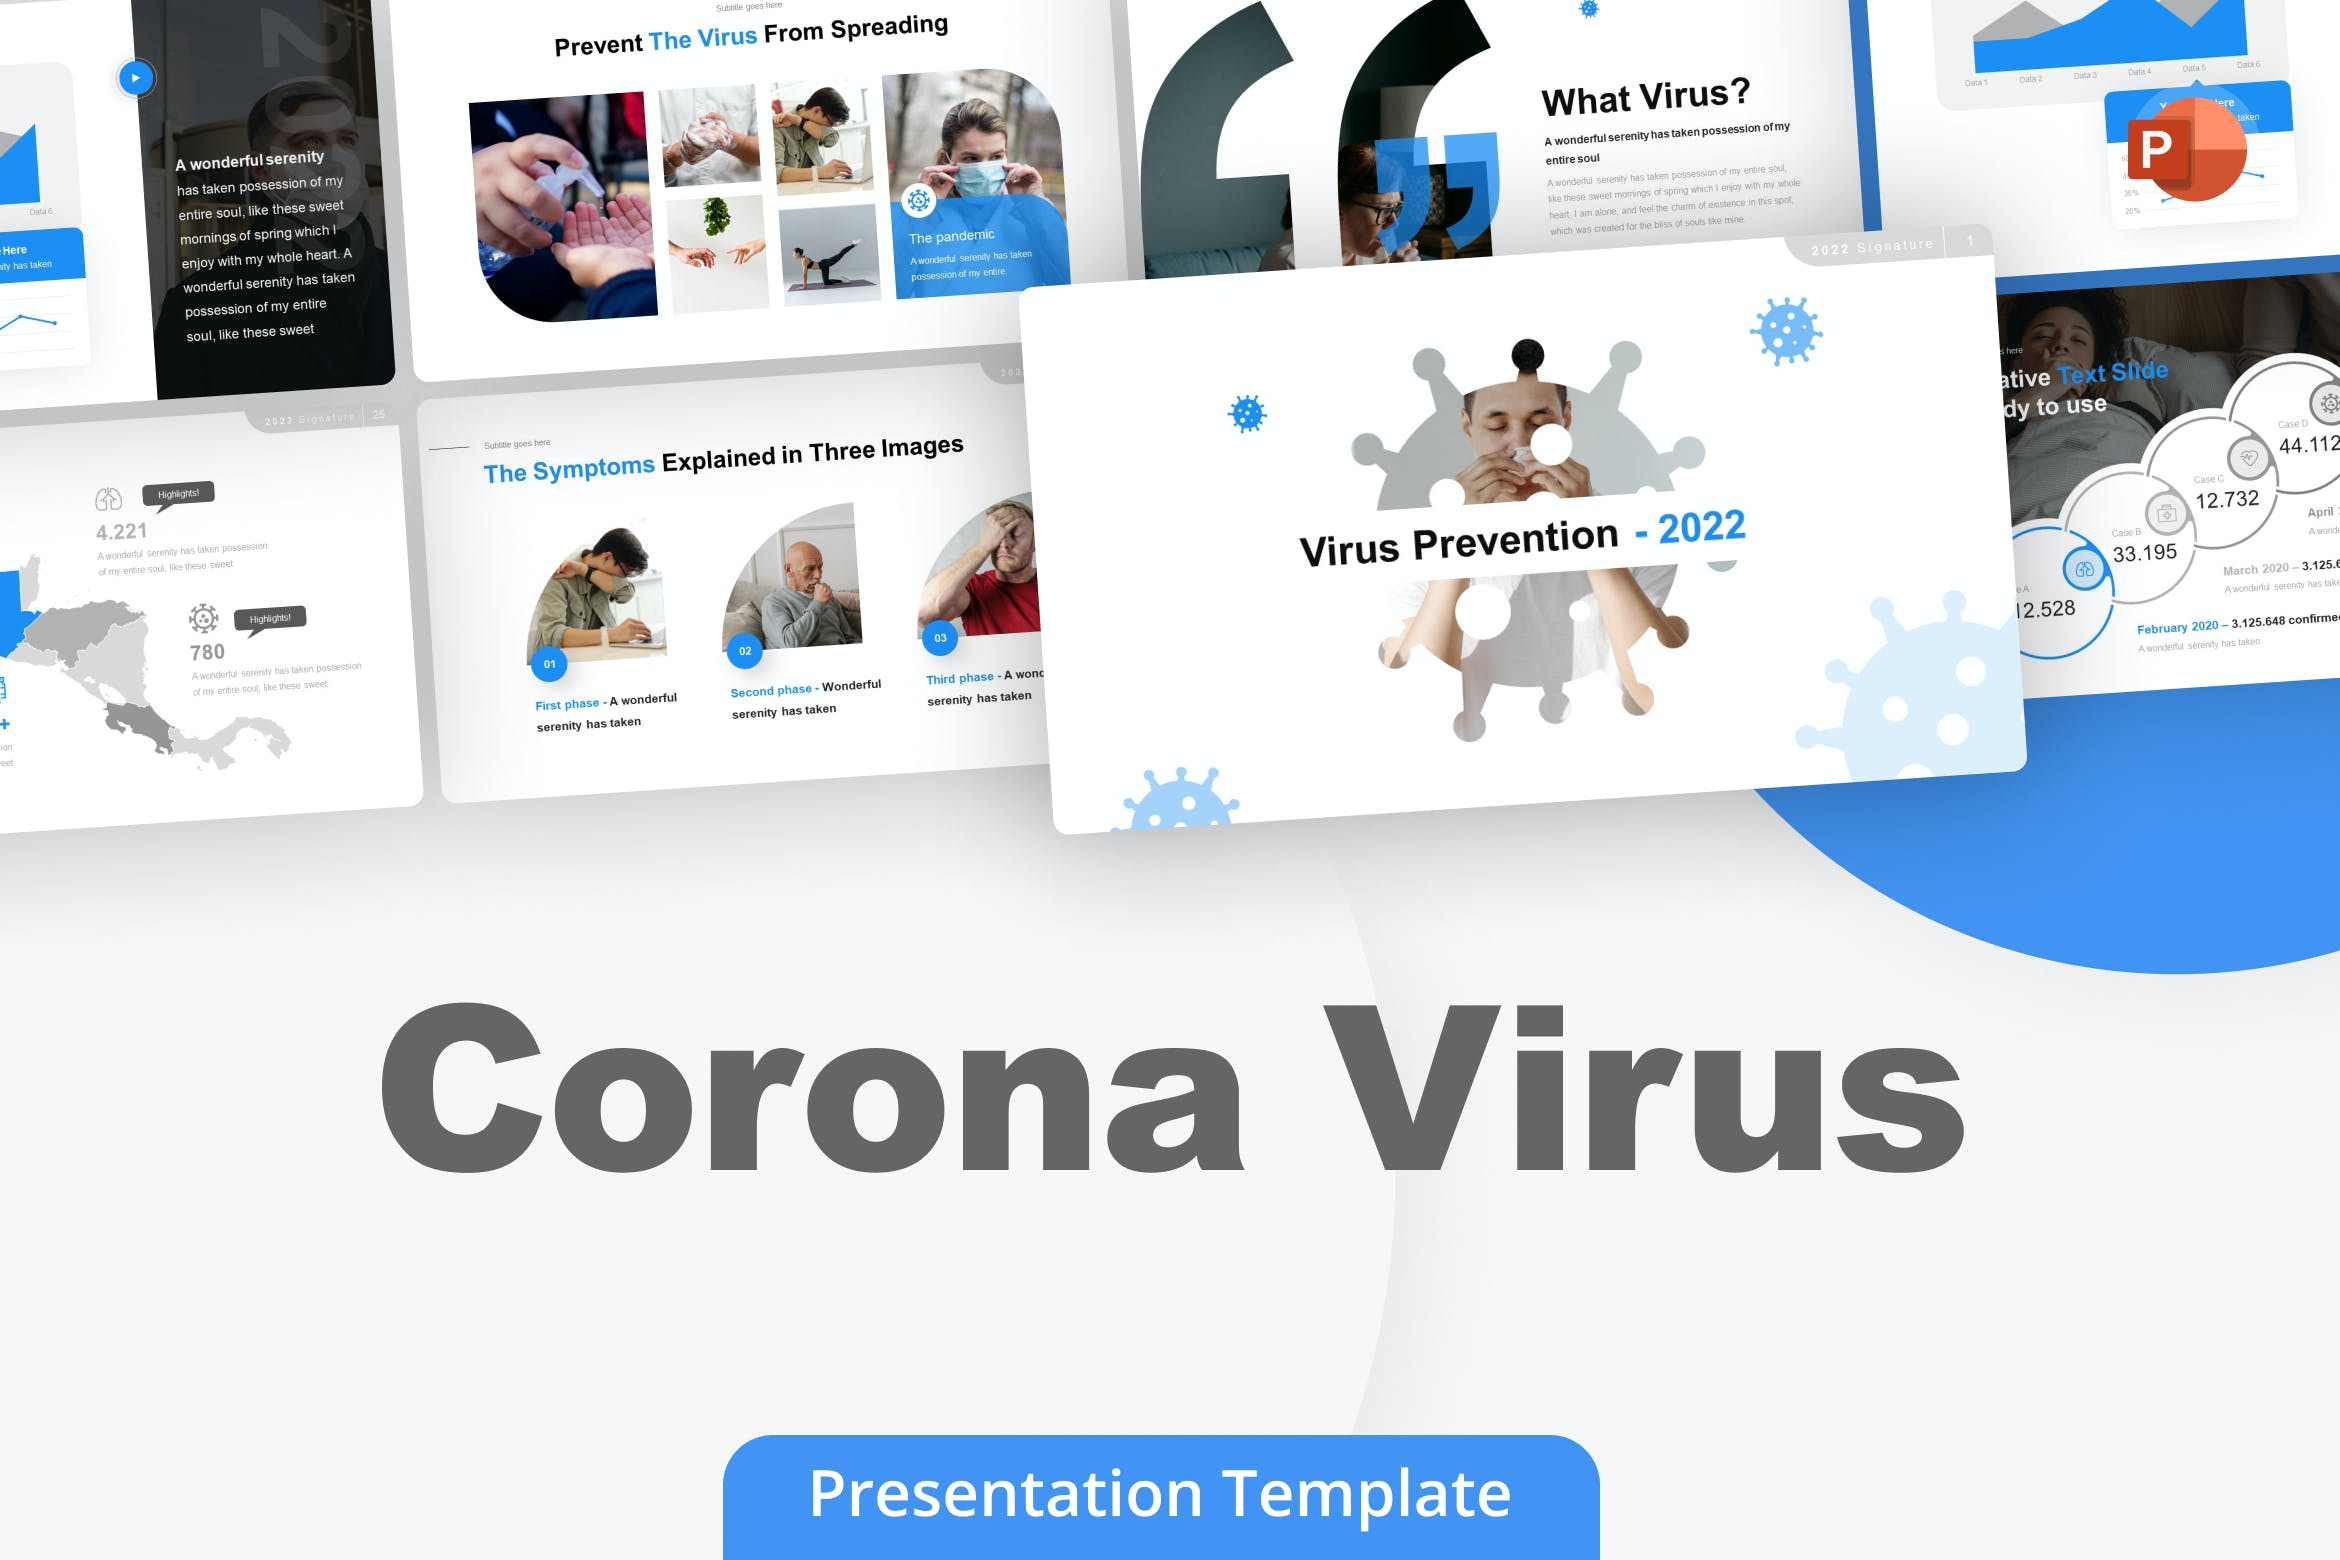 甲流病毒预防Powerpoint模板 Corona Virus PowerPoint Template 幻灯图表 第1张